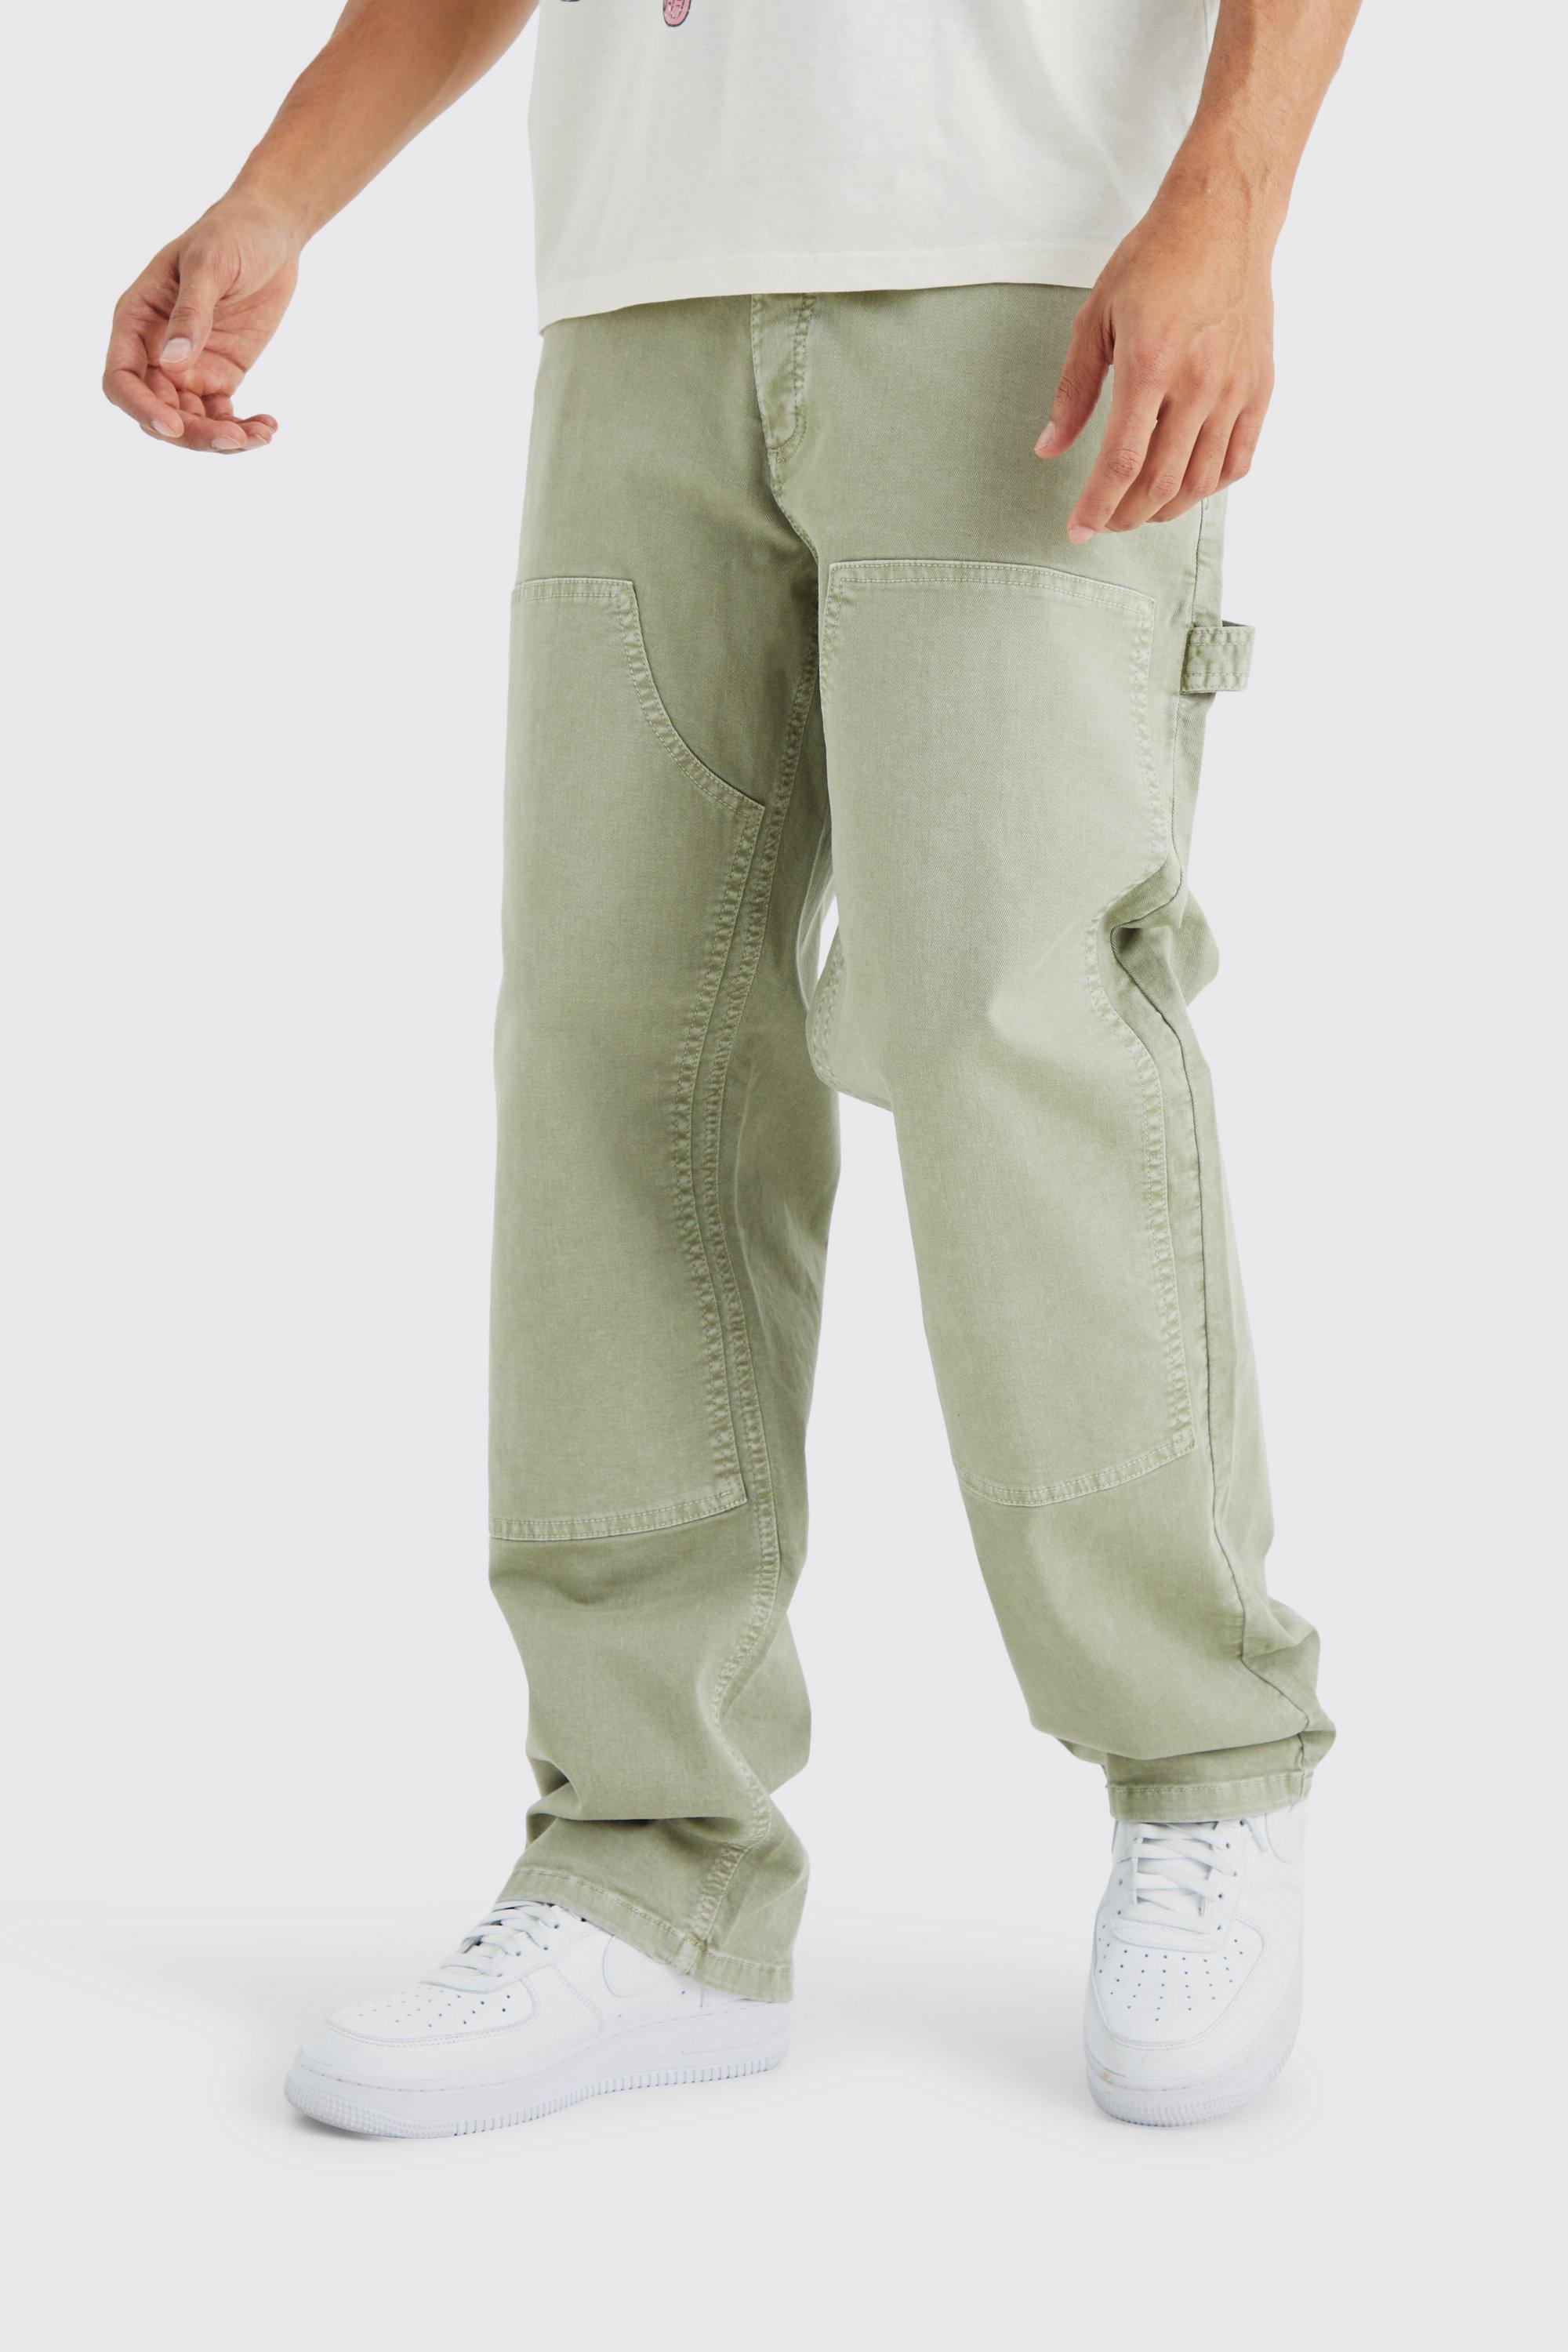 Pantalon de charpentier Wolverine travail vert olive jean homme taille  40x34 rég